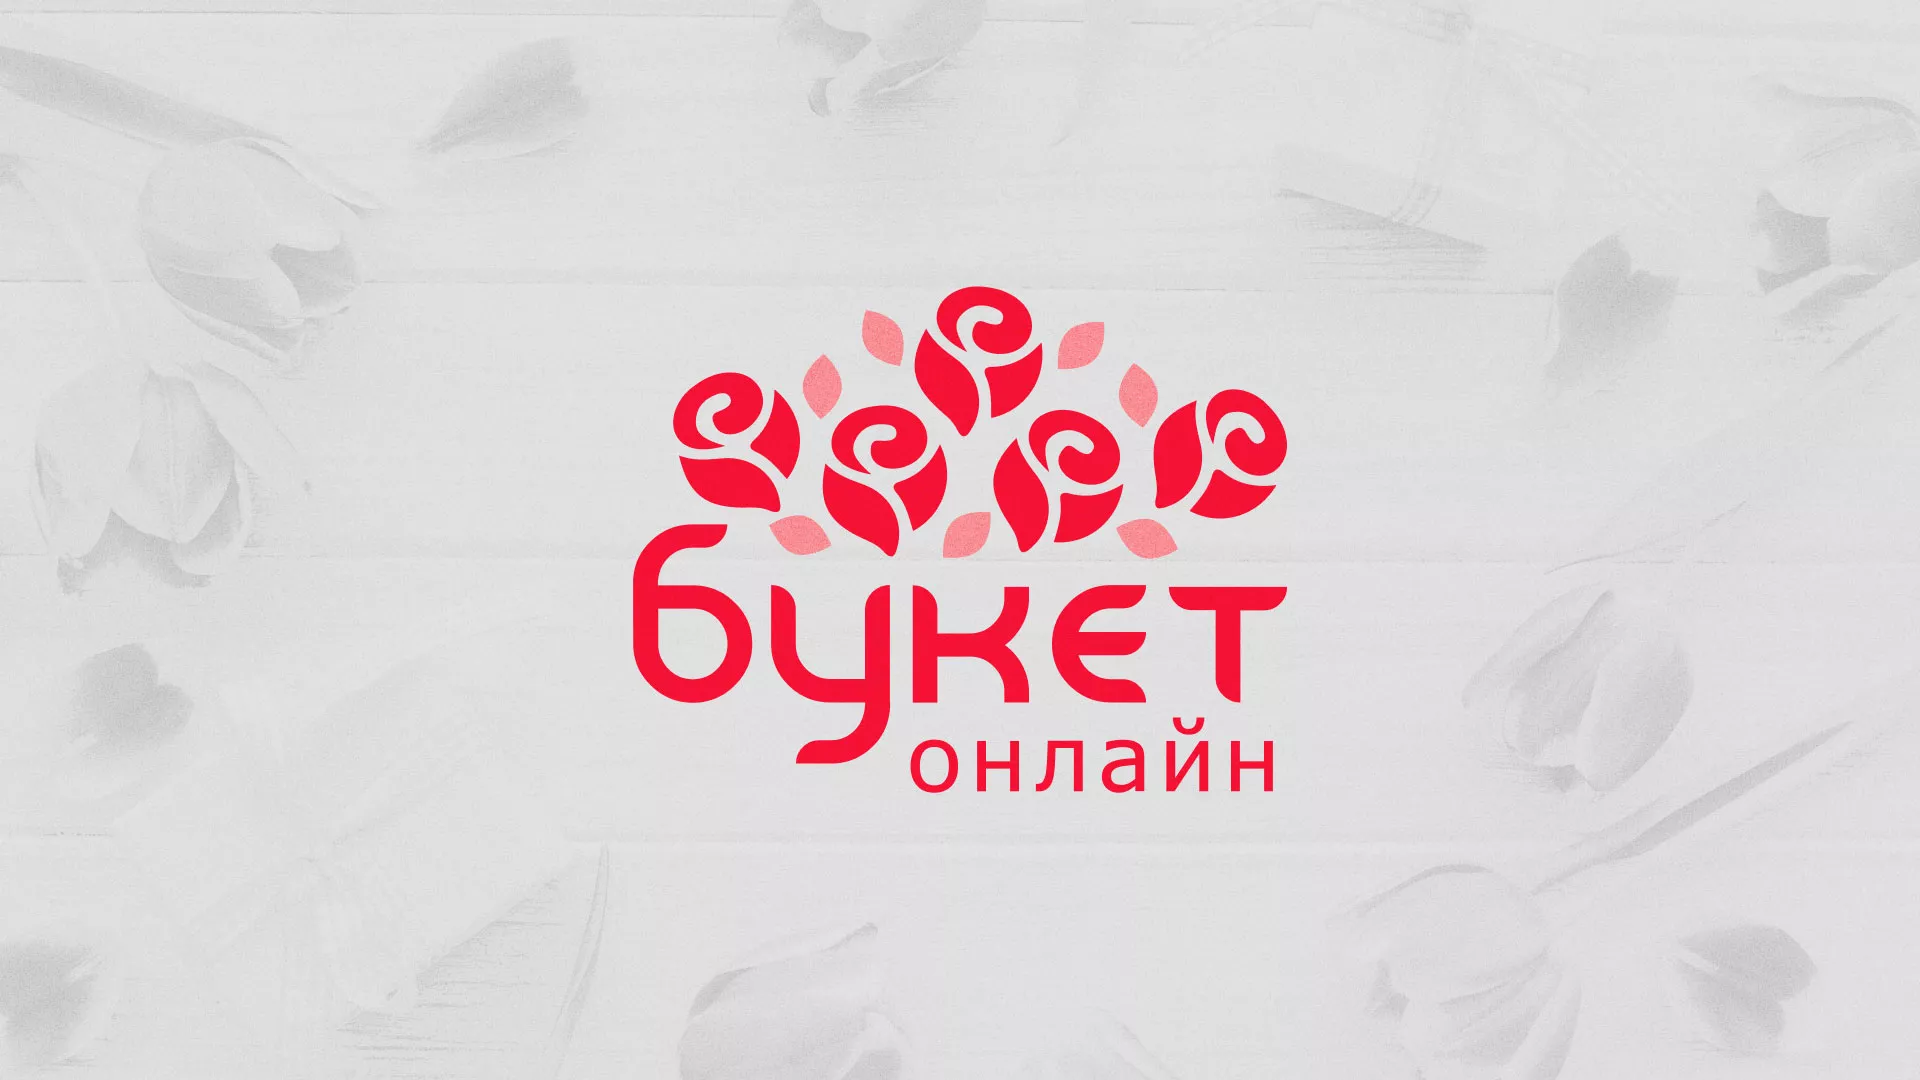 Создание интернет-магазина «Букет-онлайн» по цветам в Батайске